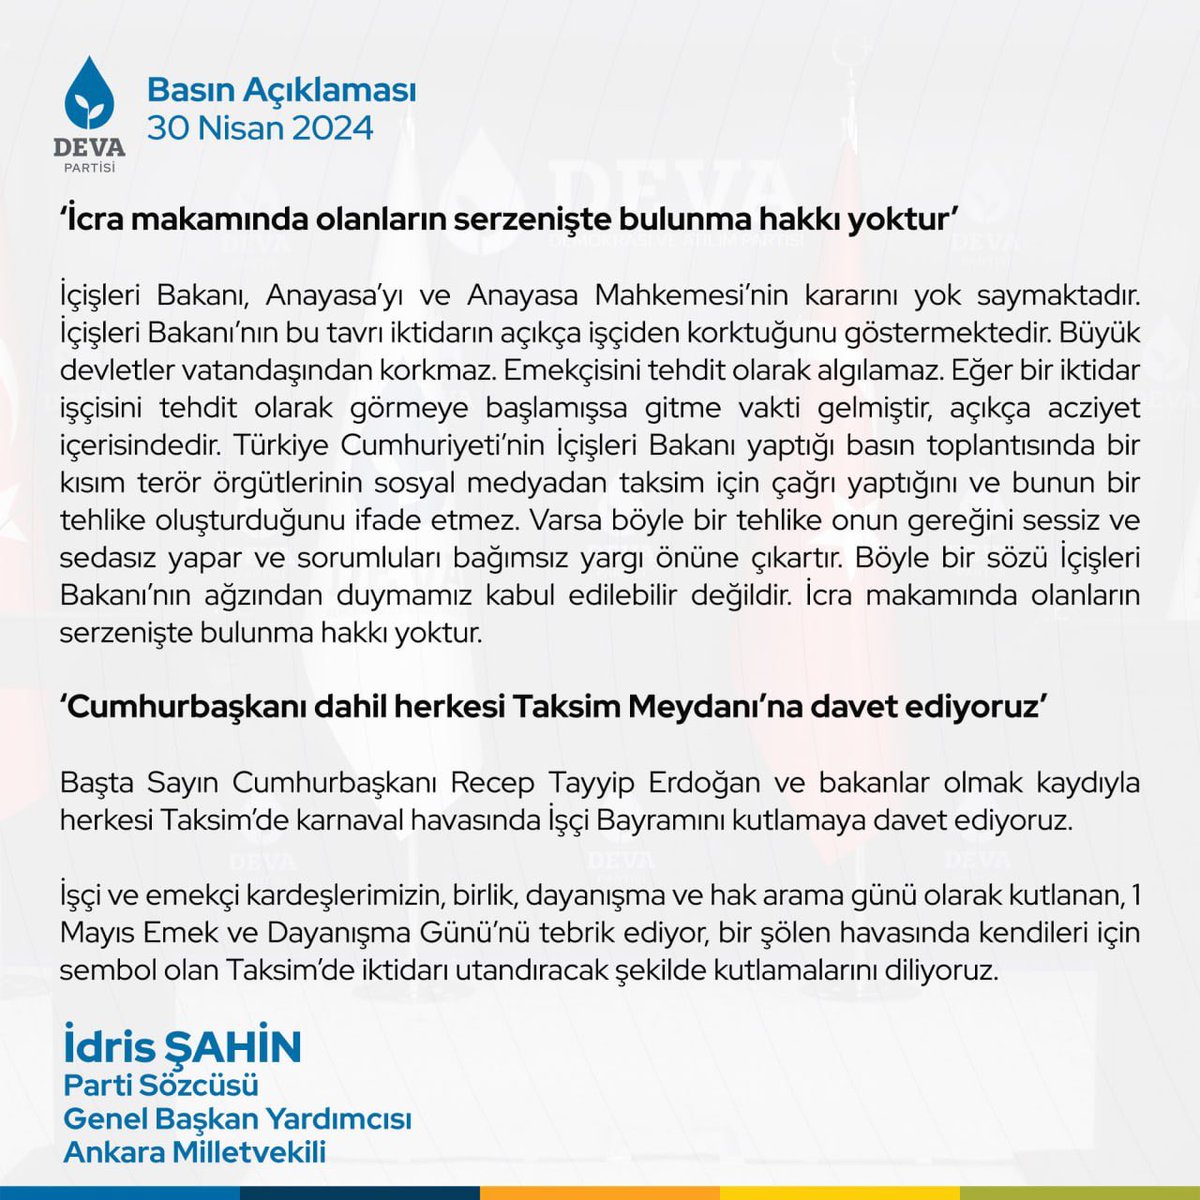 “Taksim Meydanı’nın işçilere kapatılması Anayasa’ya aykırı, açıkça bir hak ihlalidir.”

Parti Sözcümüz ve Ankara Milletvekilimiz @avidrissahin, 1 Mayıs Emek ve Dayanışma Günü ile ilgili açıklama yaptı.